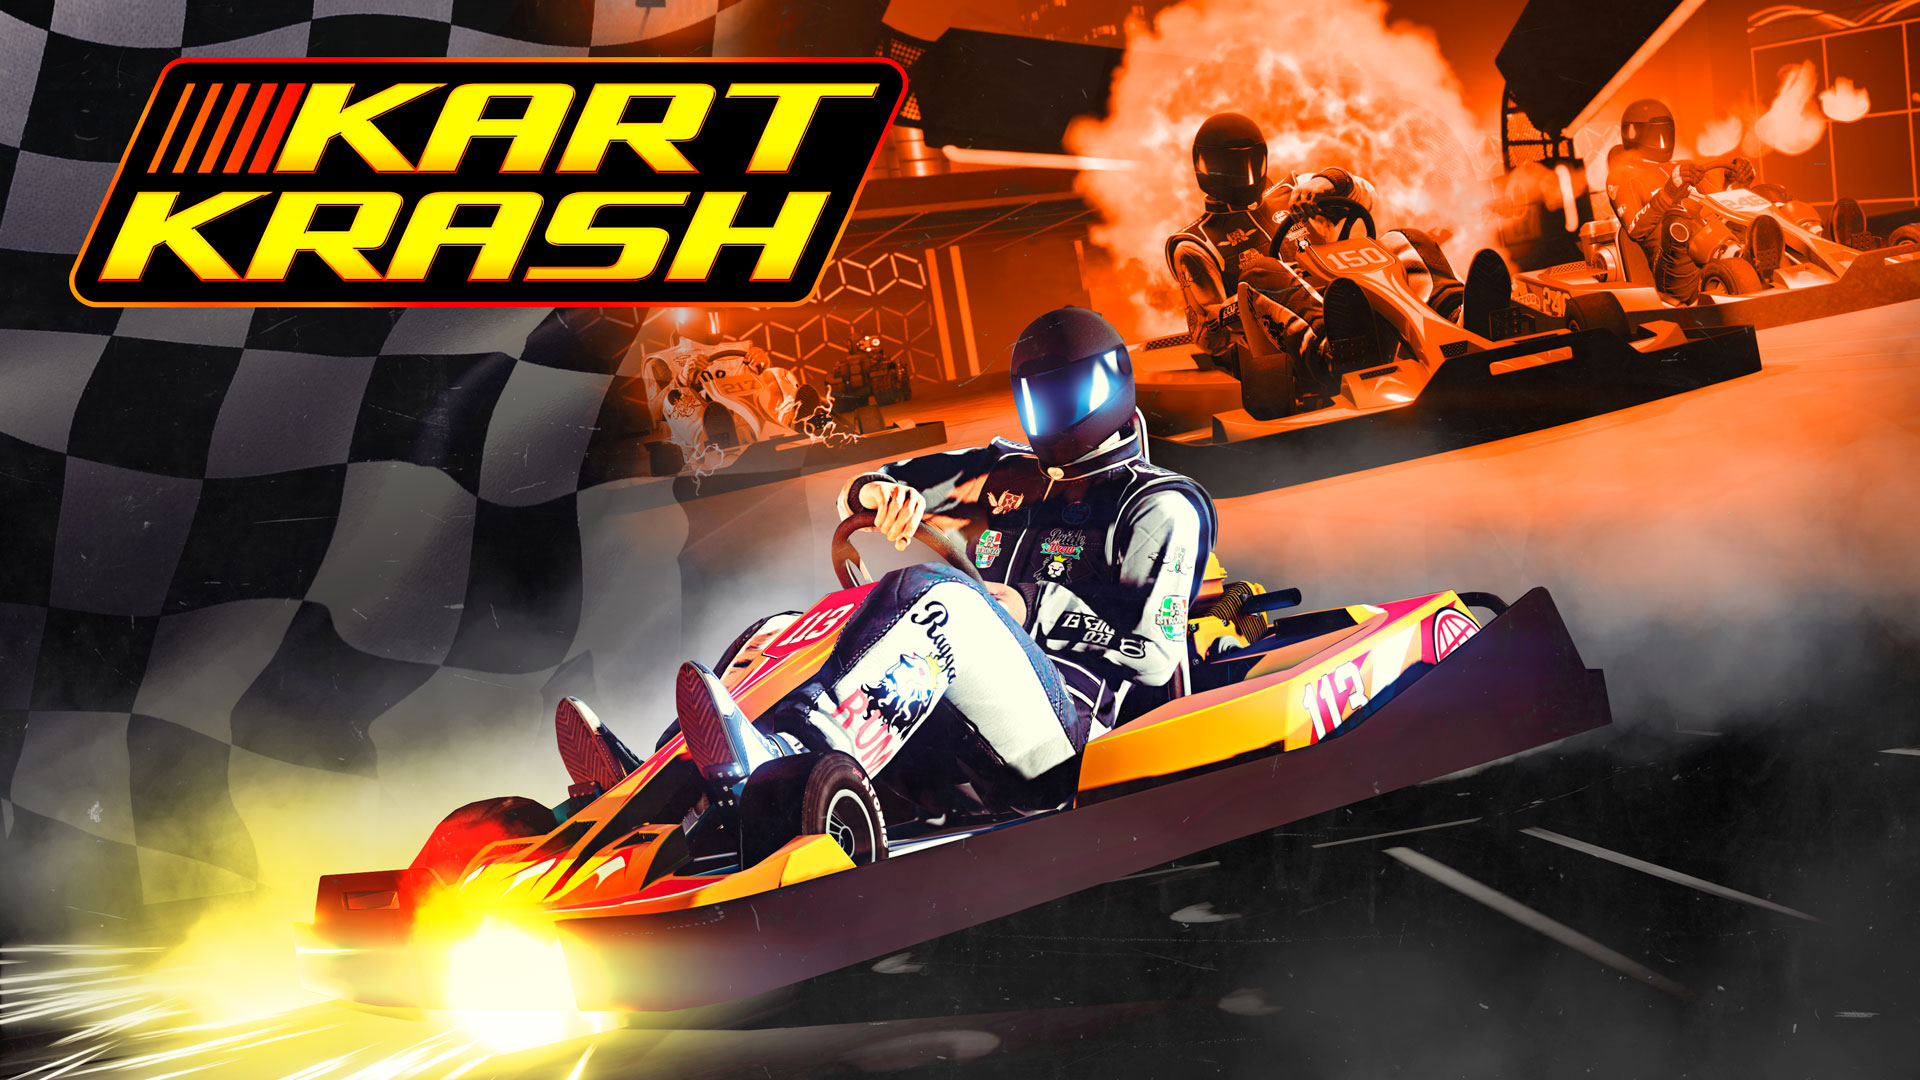 personeelszaken tumor Lijkenhuis New Kart Krash Go-Kart mode comes to GTA Online | GodisaGeek.com